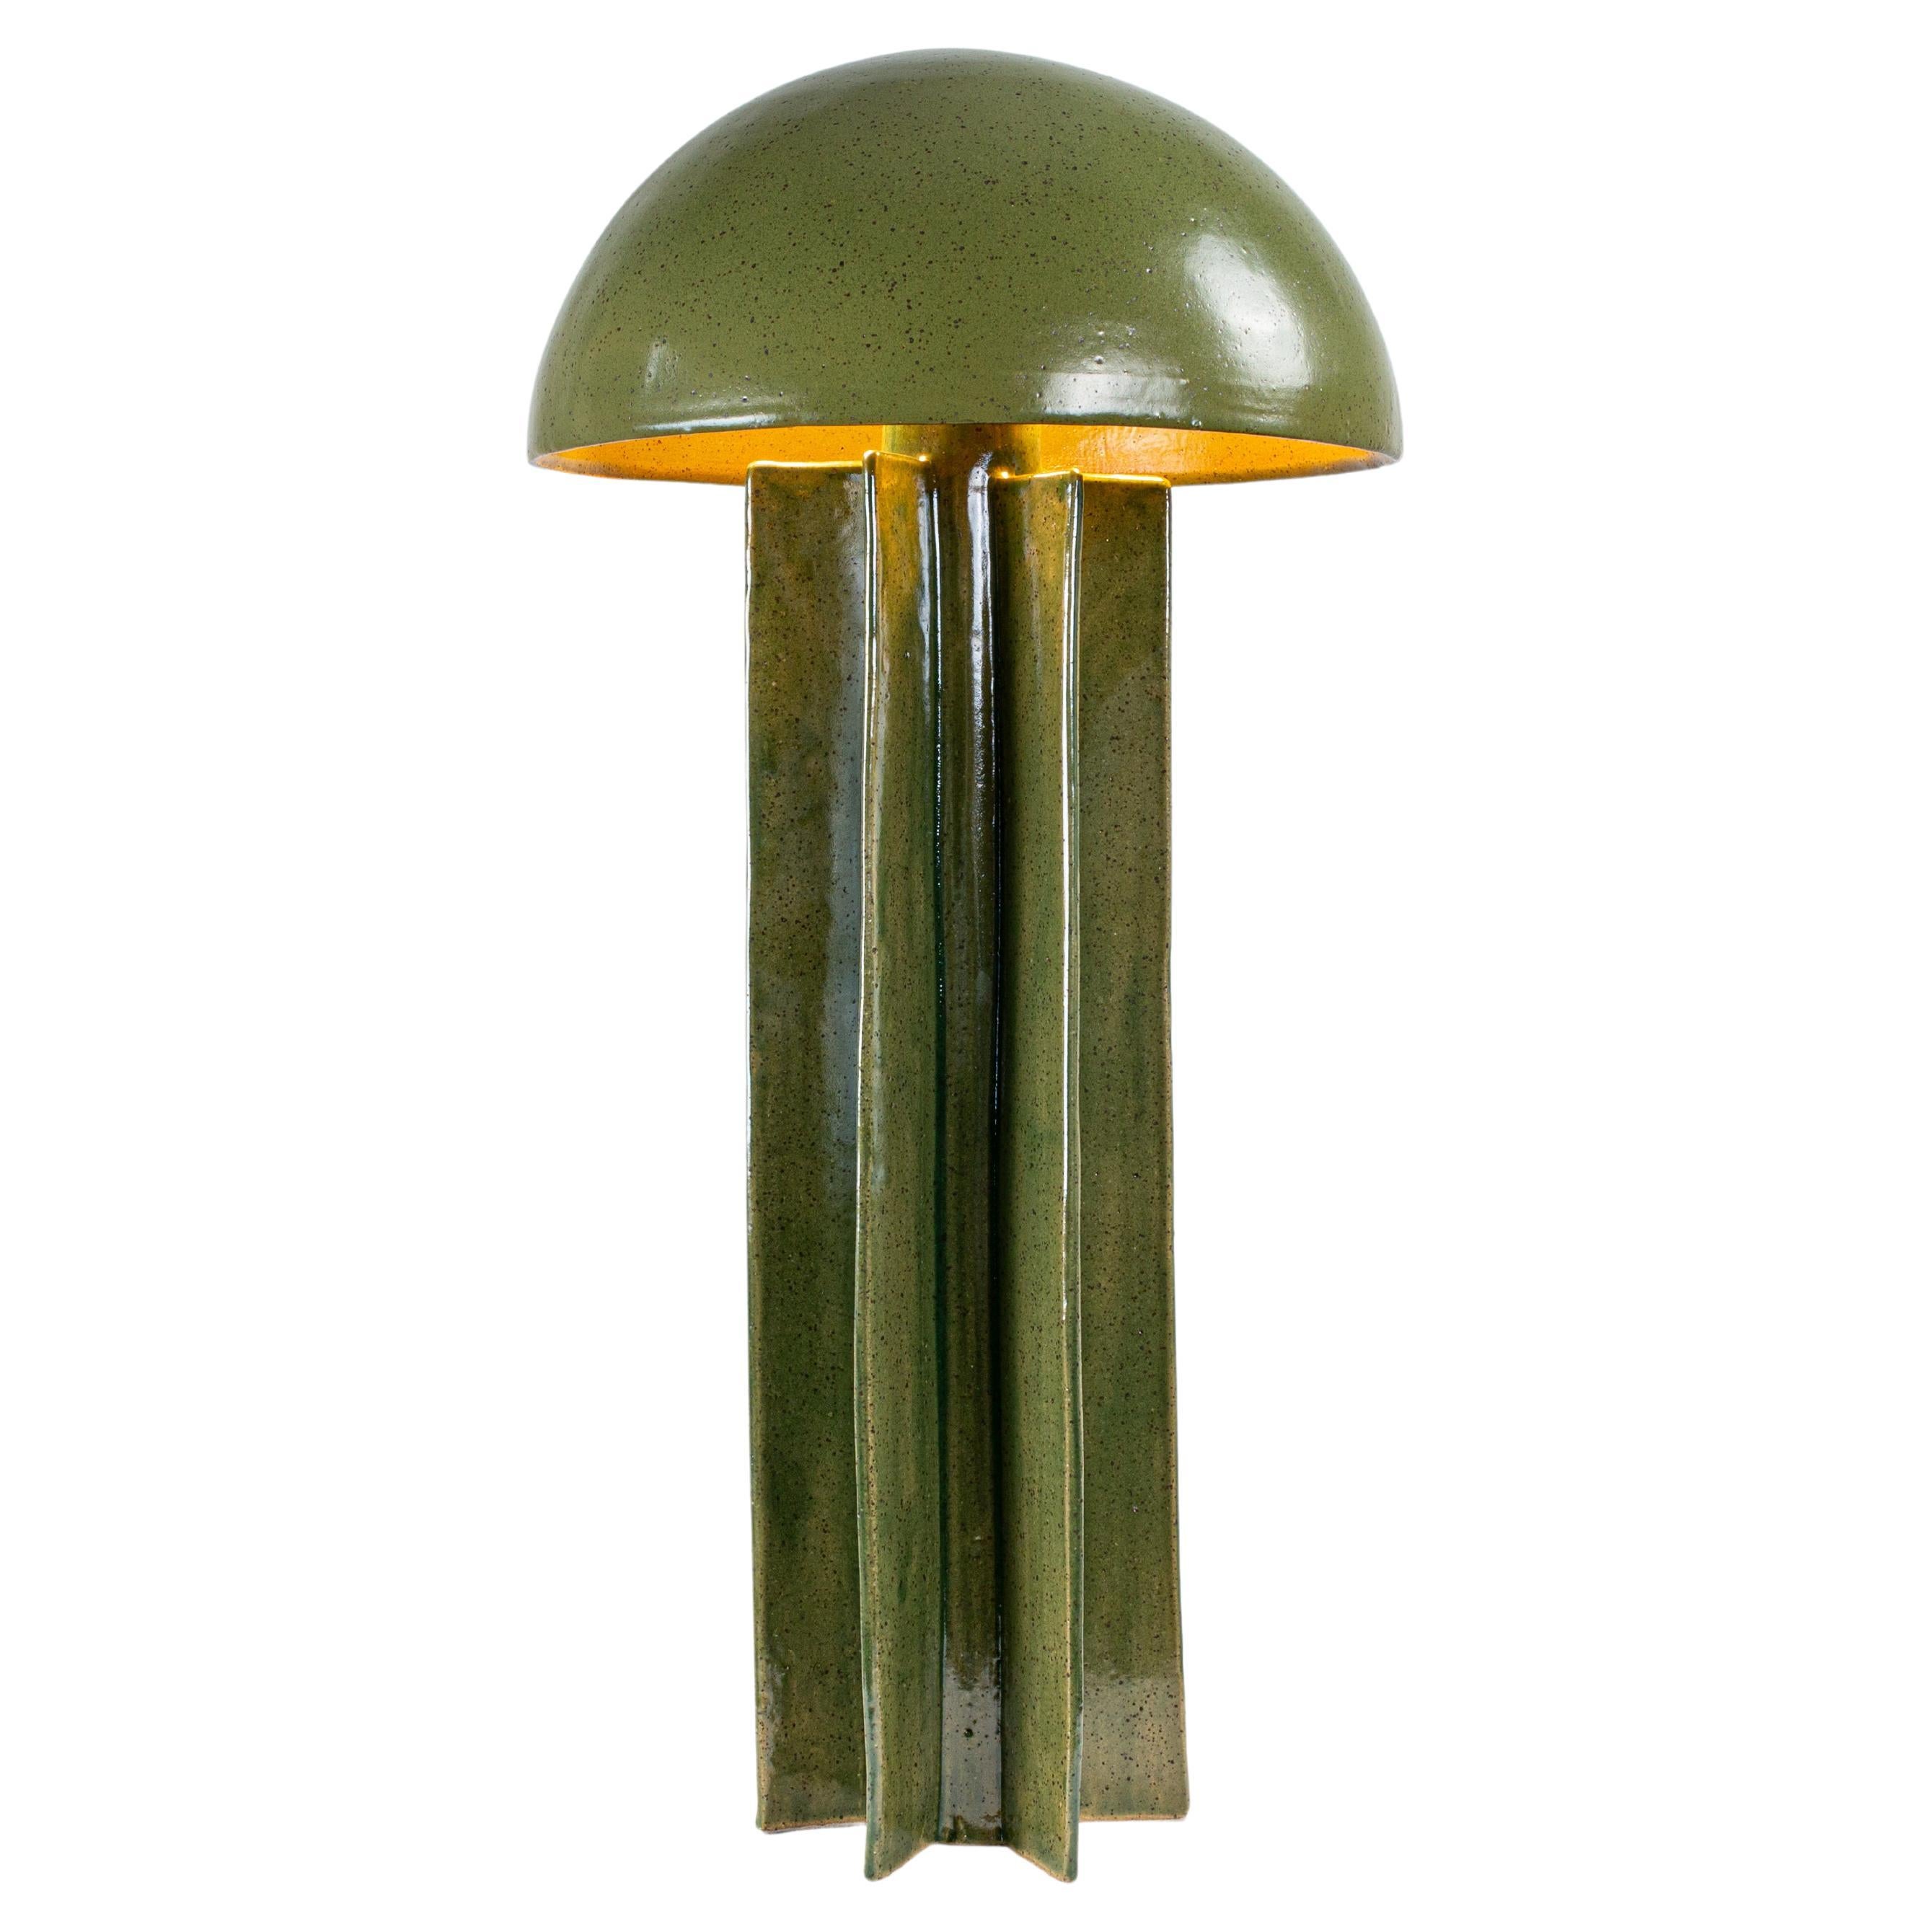 FIN Tischleuchte, Green Glaze Finish, handgefertigte Keramik Dome Lampe von Kalin Asenov